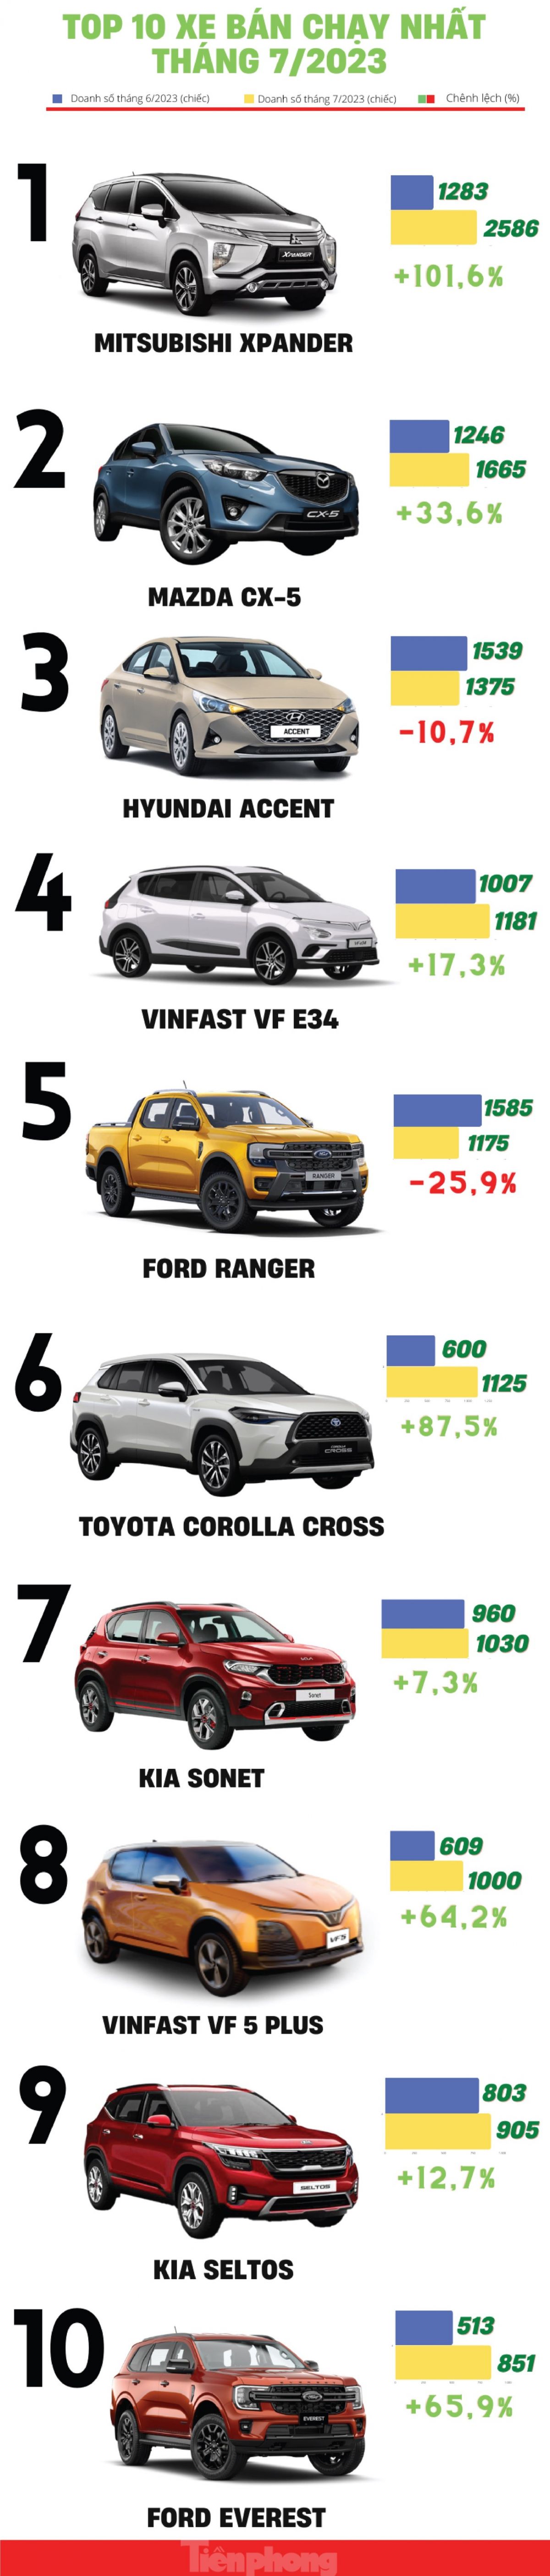 Top 10 ô tô bán chạy nhất tháng 7 ảnh 1